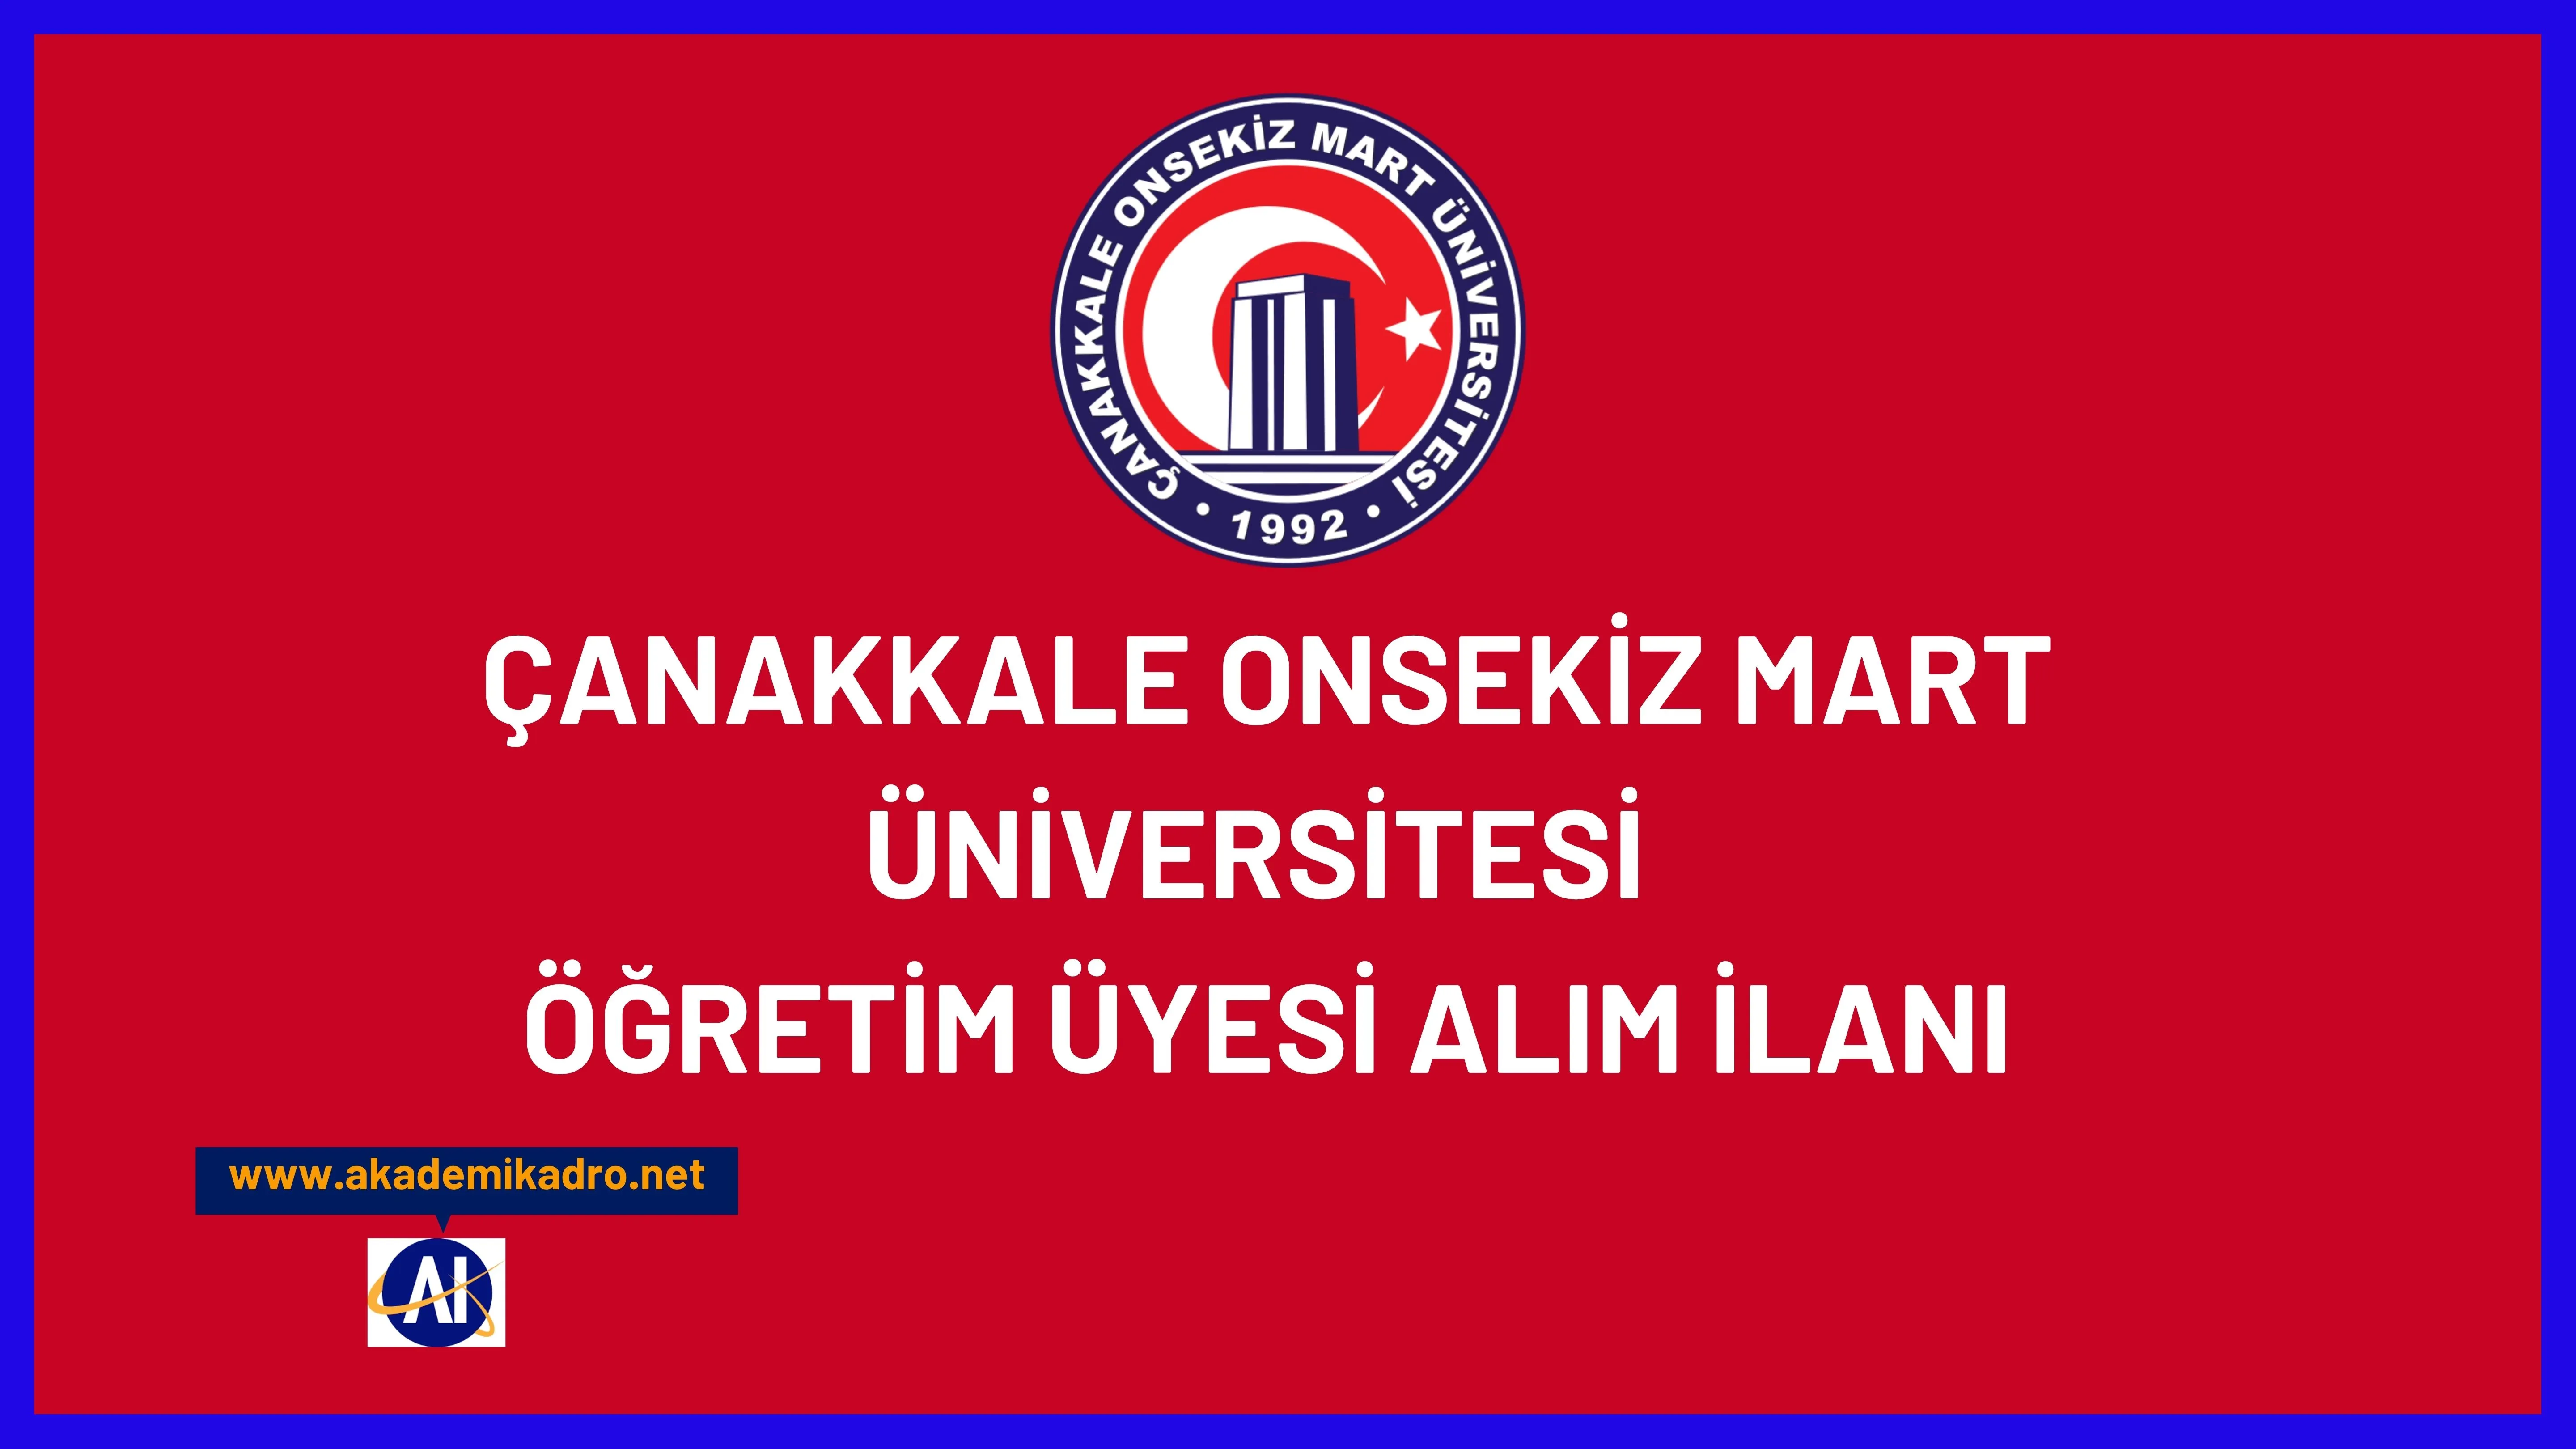 Çanakkale Onsekiz Mart Üniversitesi birçok alandan 16 öğretim üyesi alacak. Son başvuru tarihi 29 Mayıs 2023.